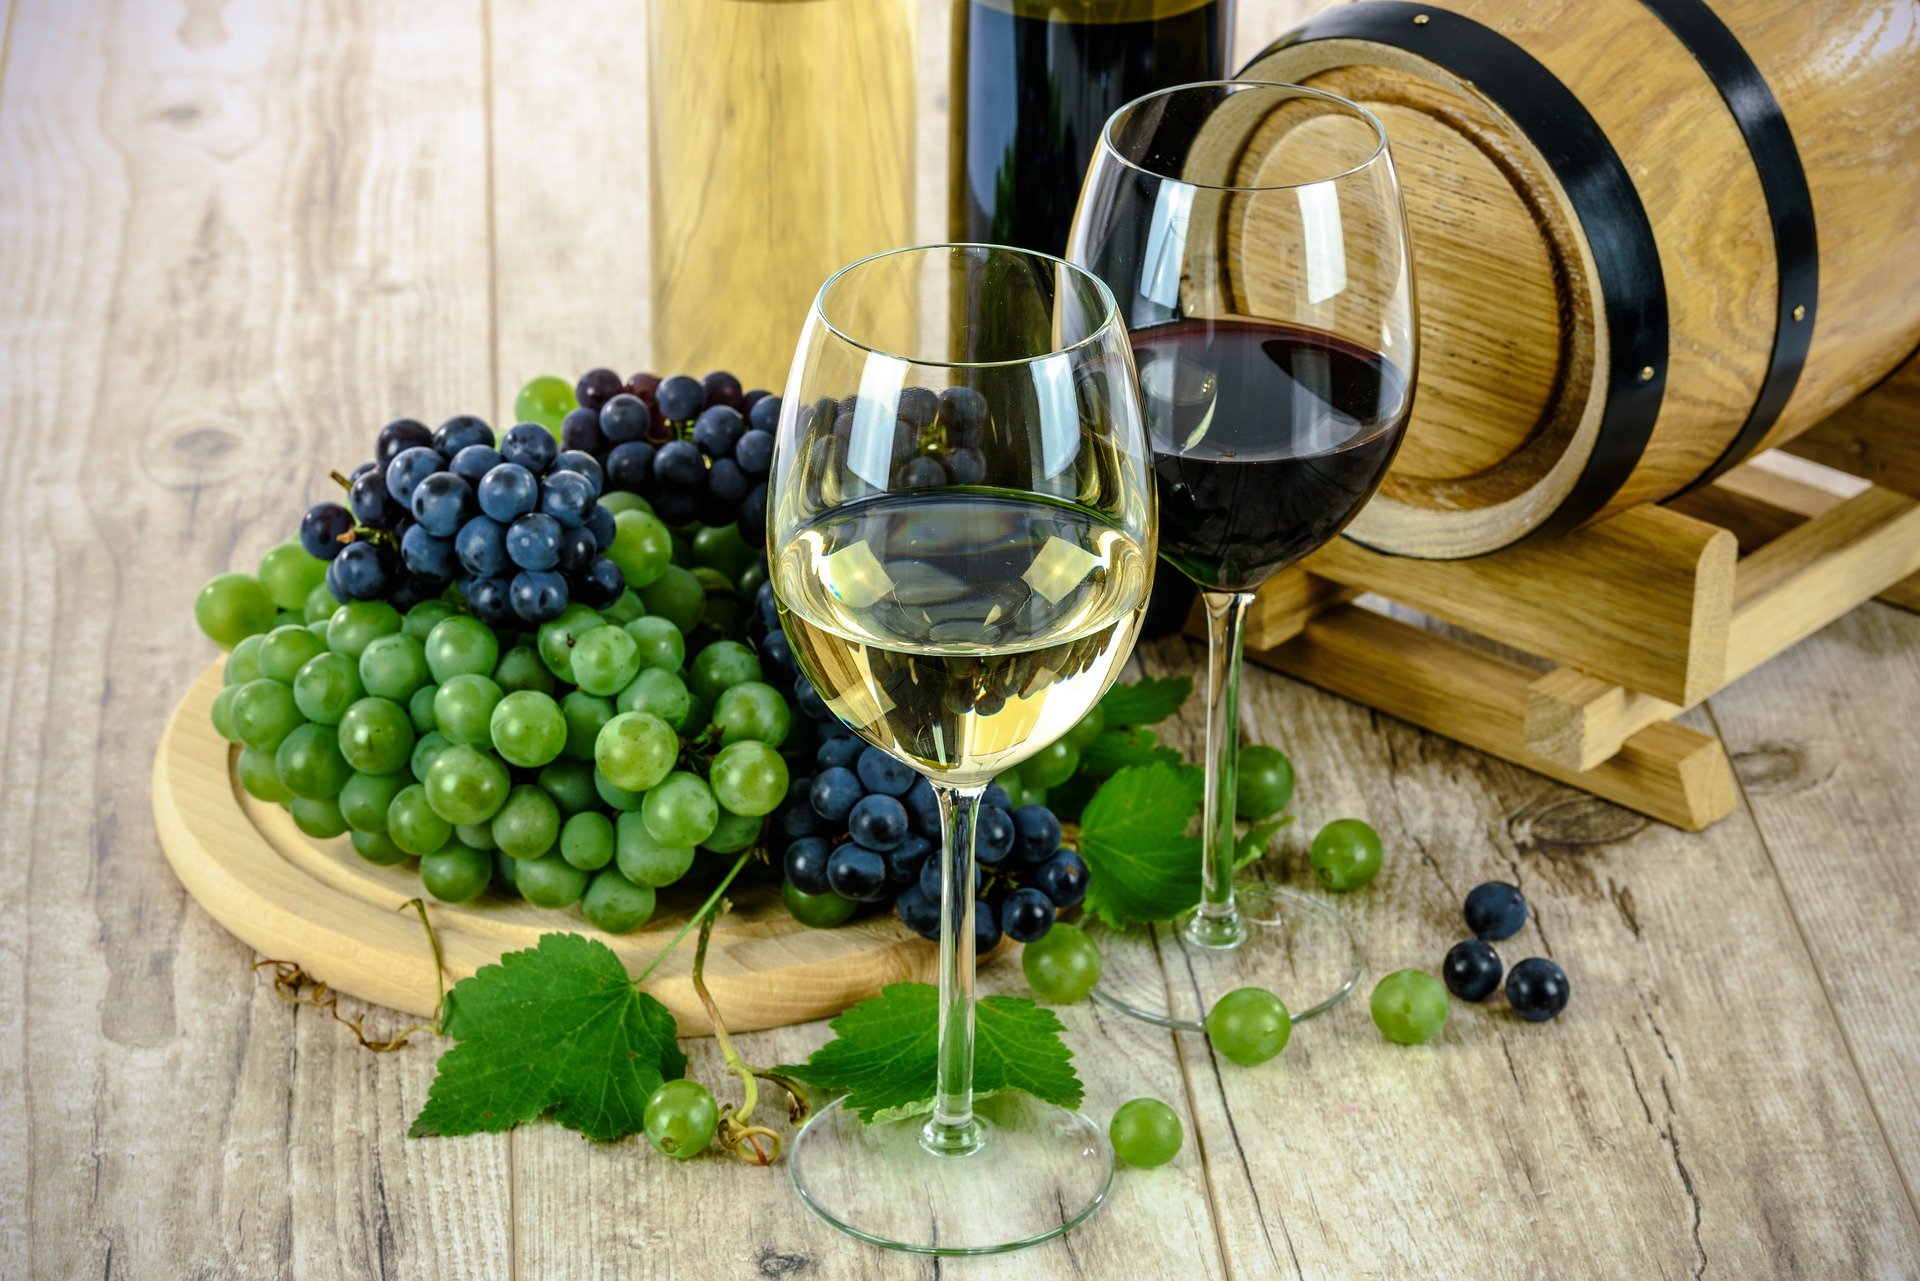 Cancer plan, la filiera vitivinicola italiana: importante aver distinto tra uso e abuso di alcol. Ora lavoriamo insieme per sconfiggere il cancro